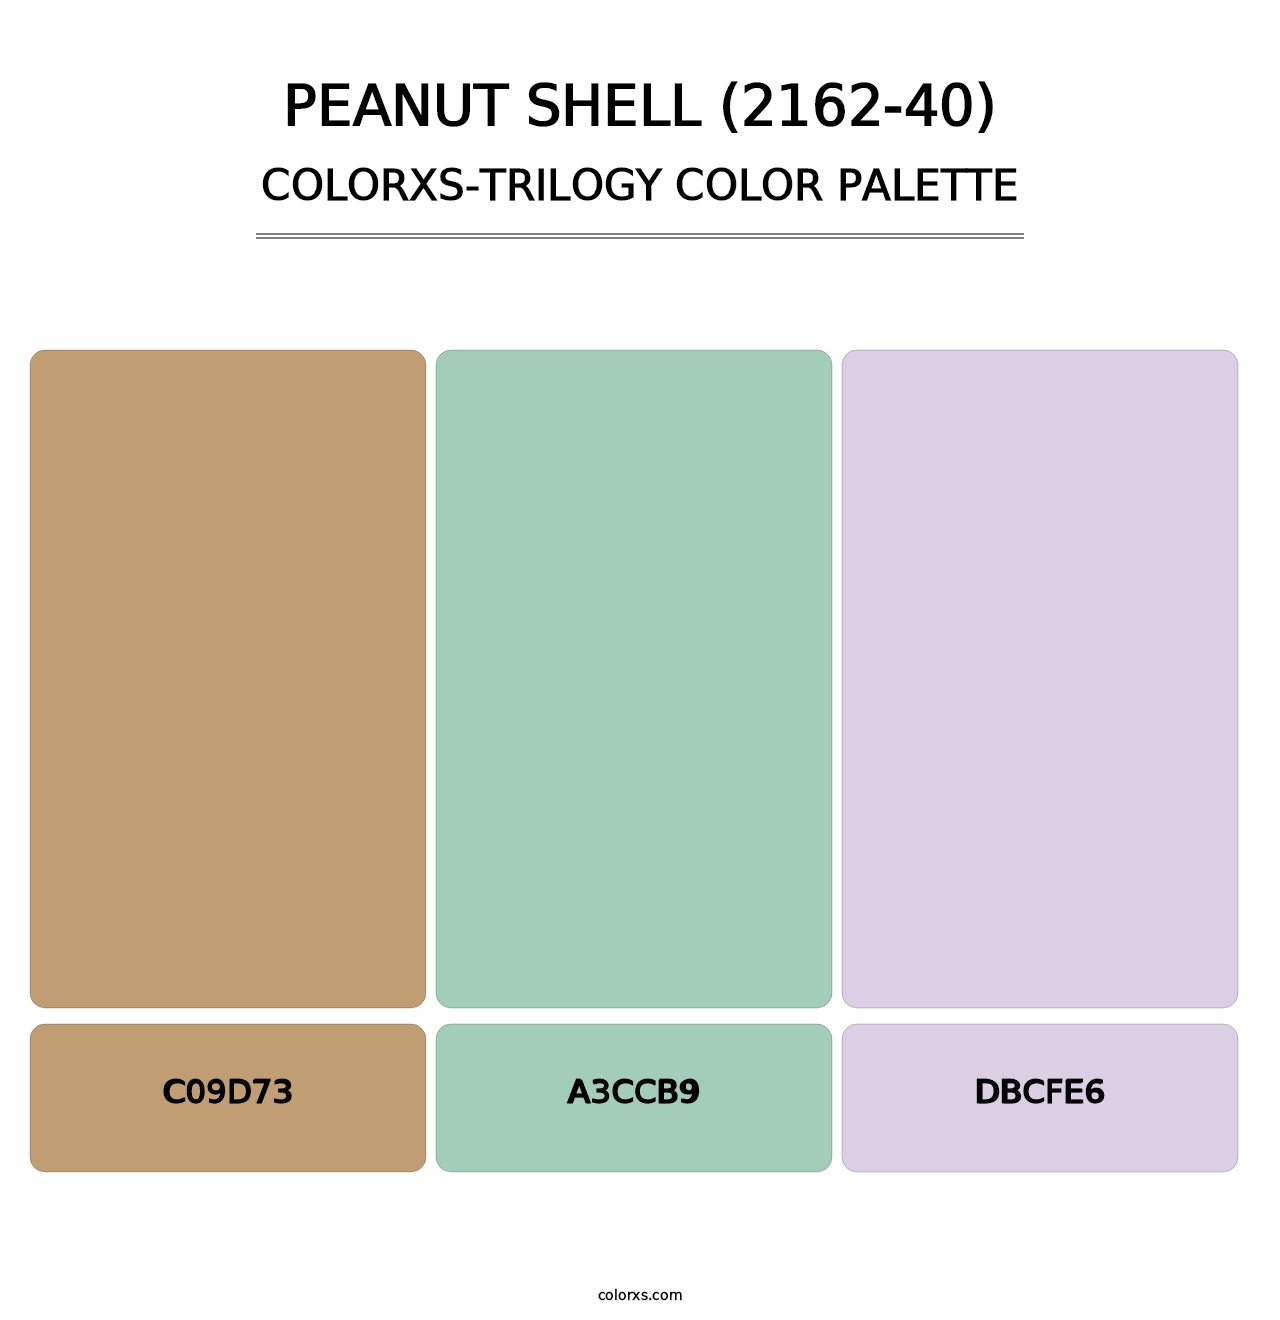 Peanut Shell (2162-40) - Colorxs Trilogy Palette